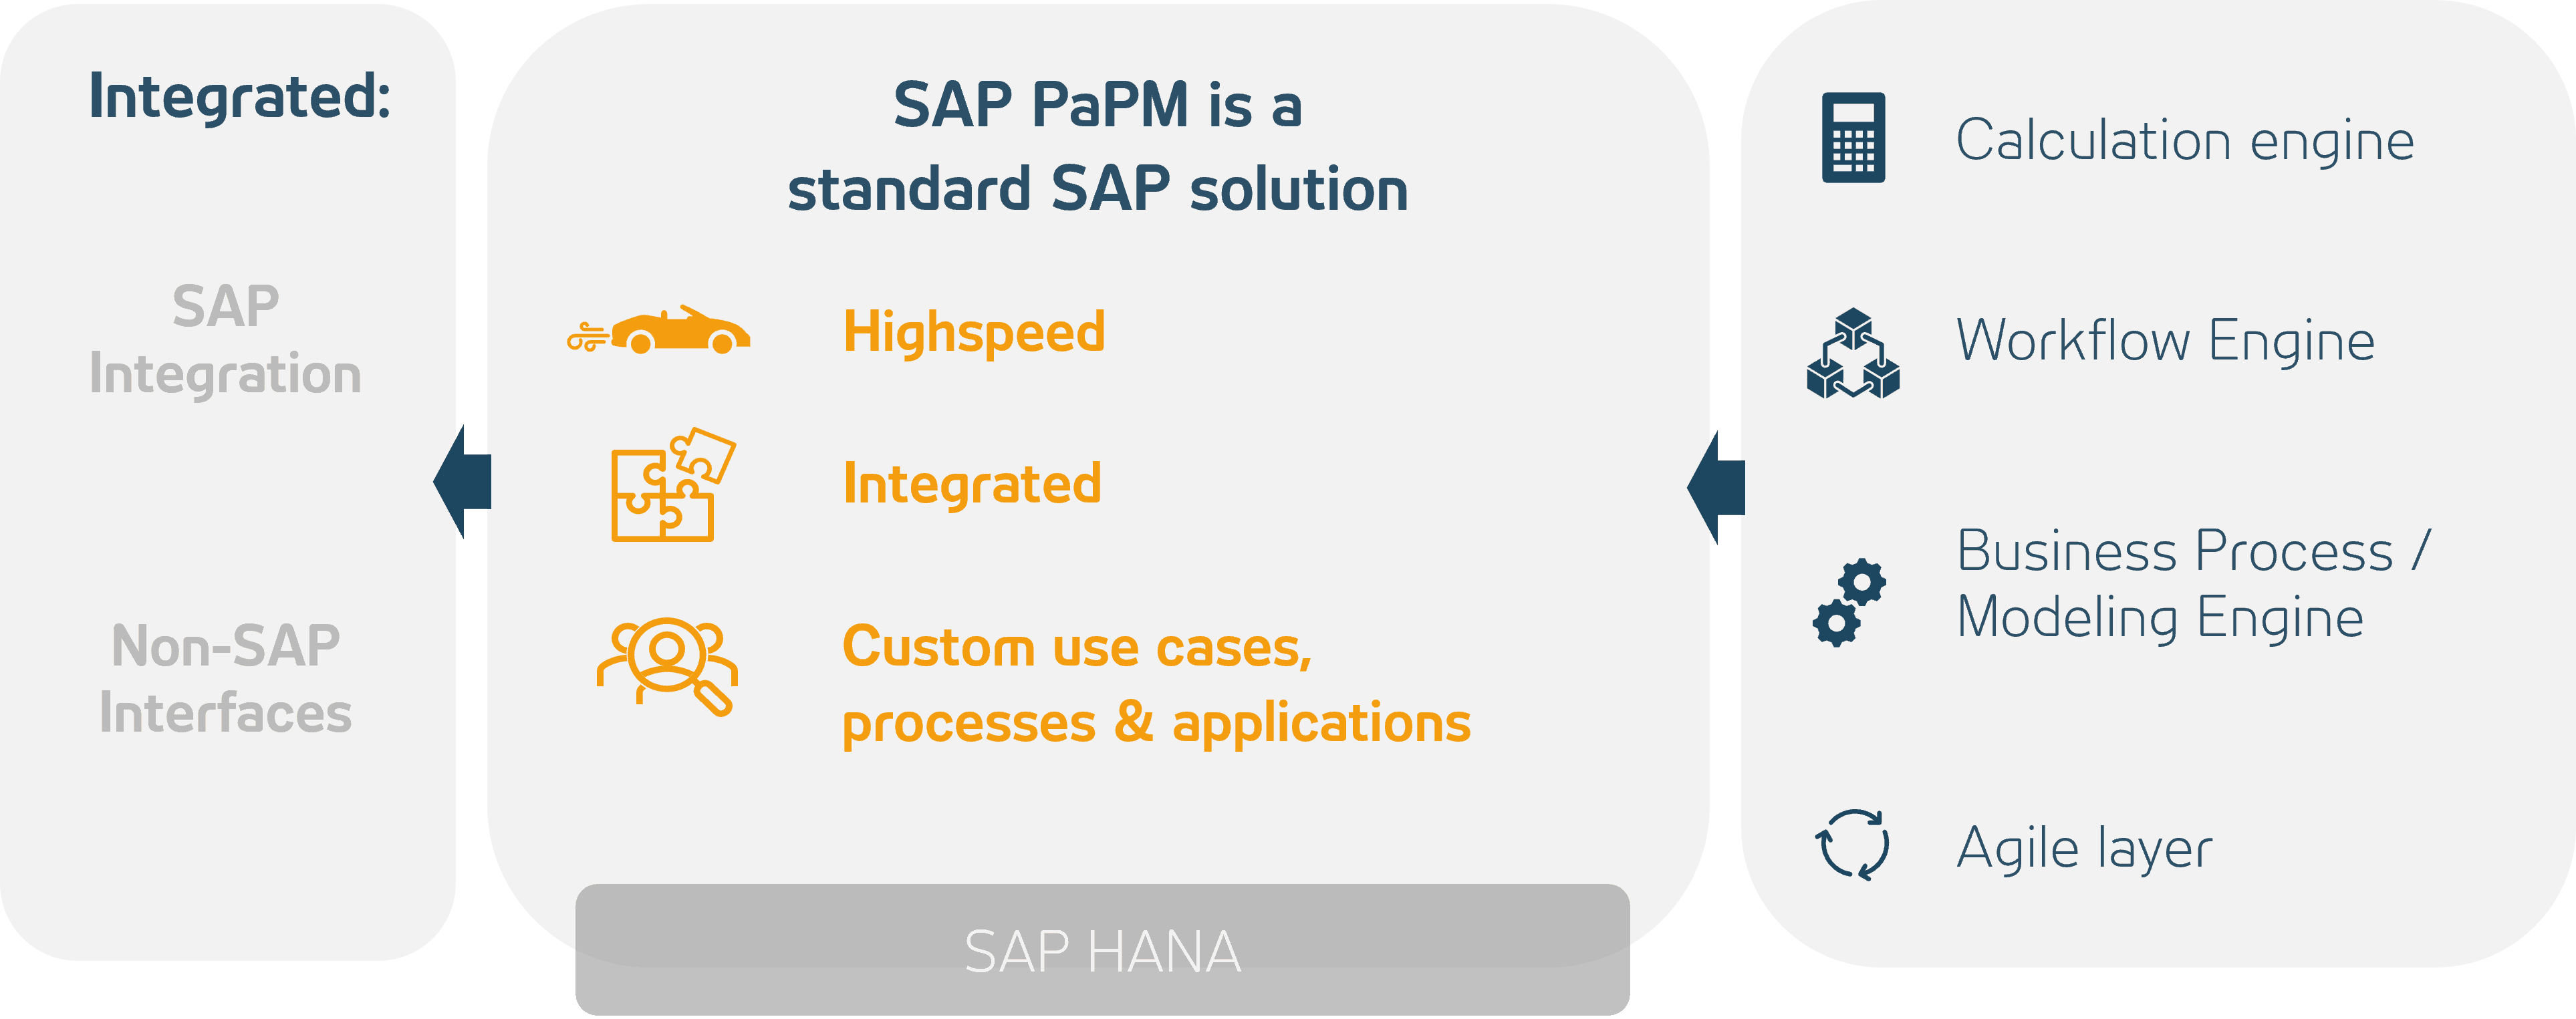 SAP PaPM as a standard solution